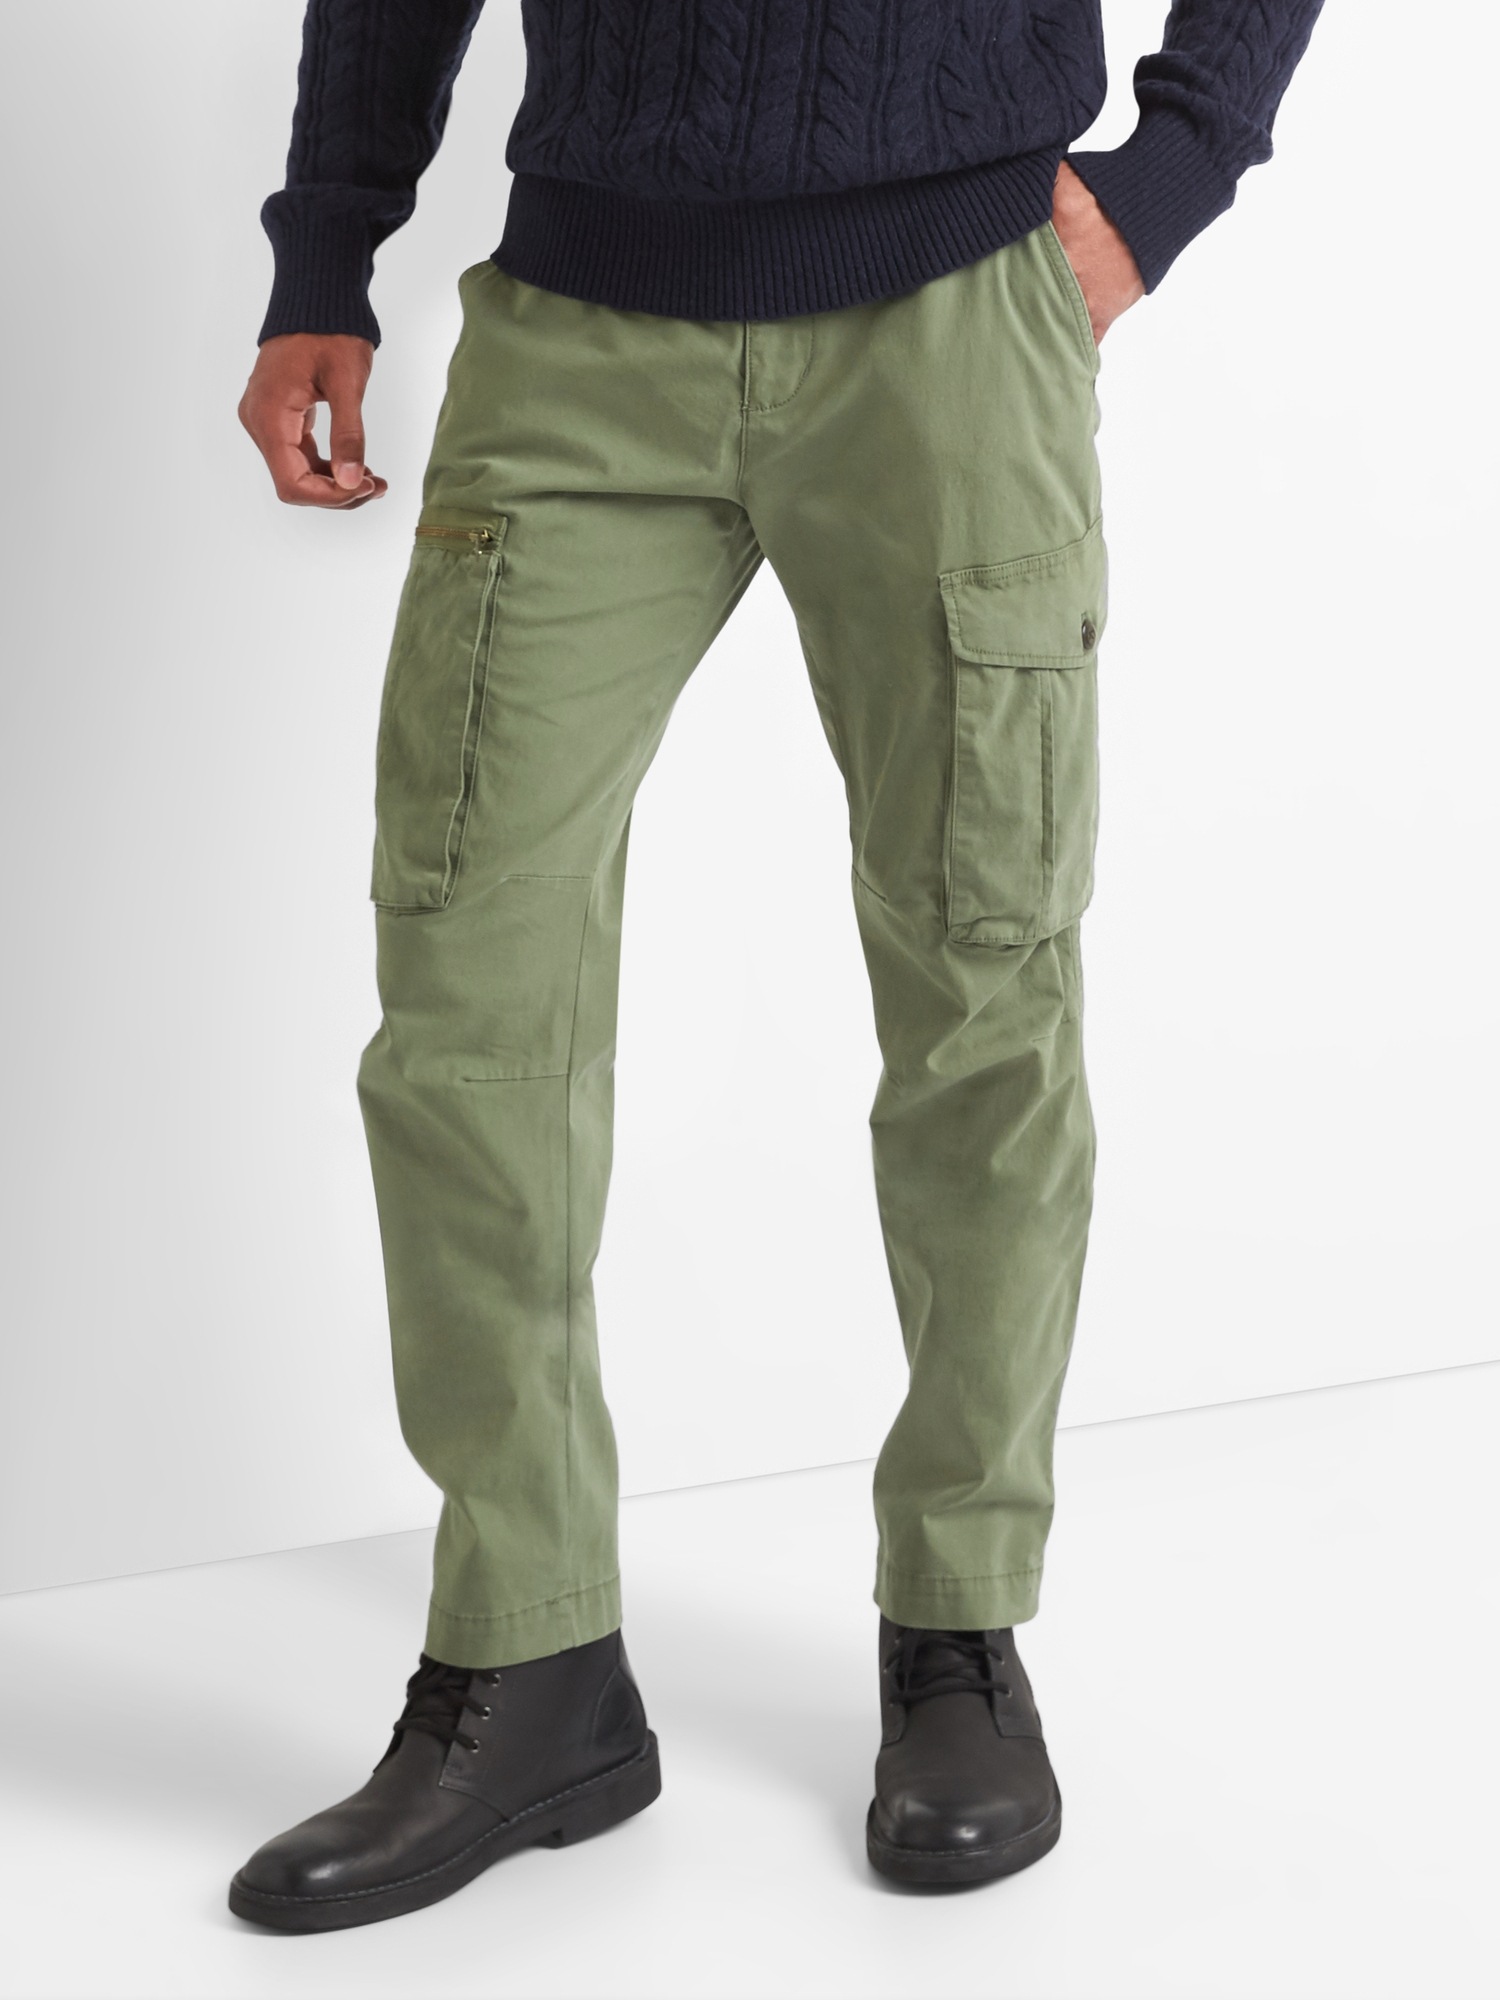 GAP Mens Cargo Jogger Casual Pants, Green Khaki, Small US at Amazon Men's  Clothing store